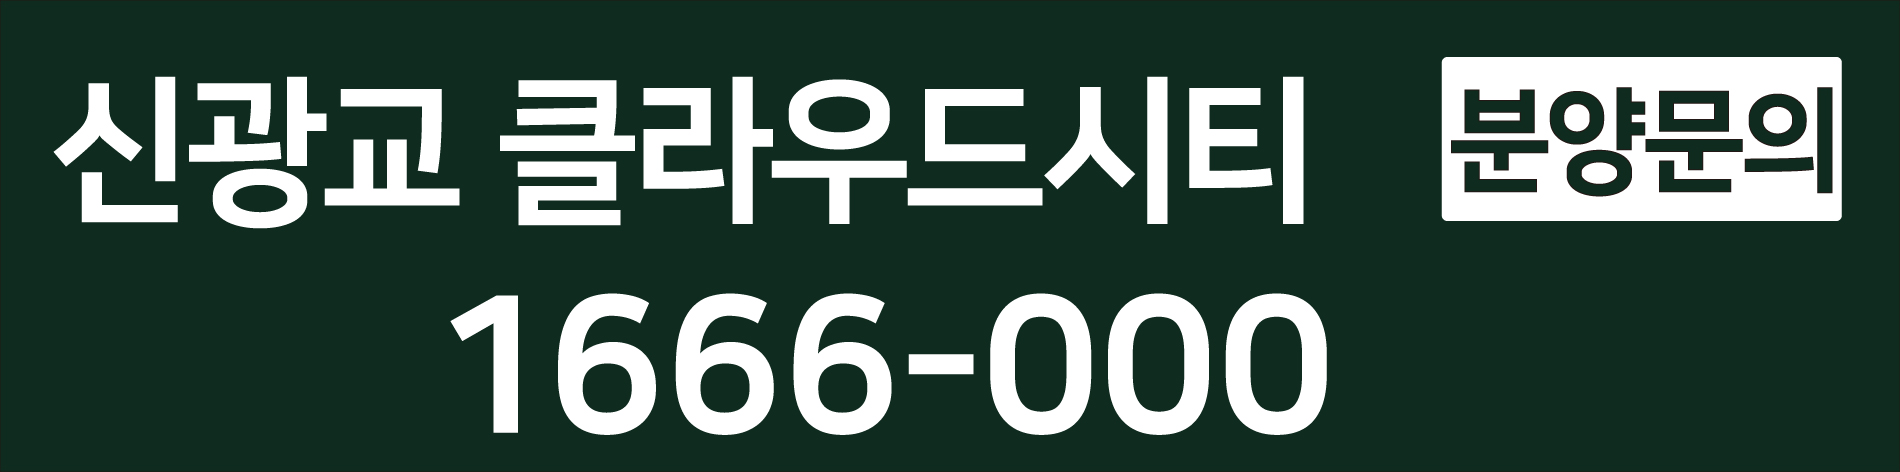 신광교 클라우드시티 대표번호 1666-9032